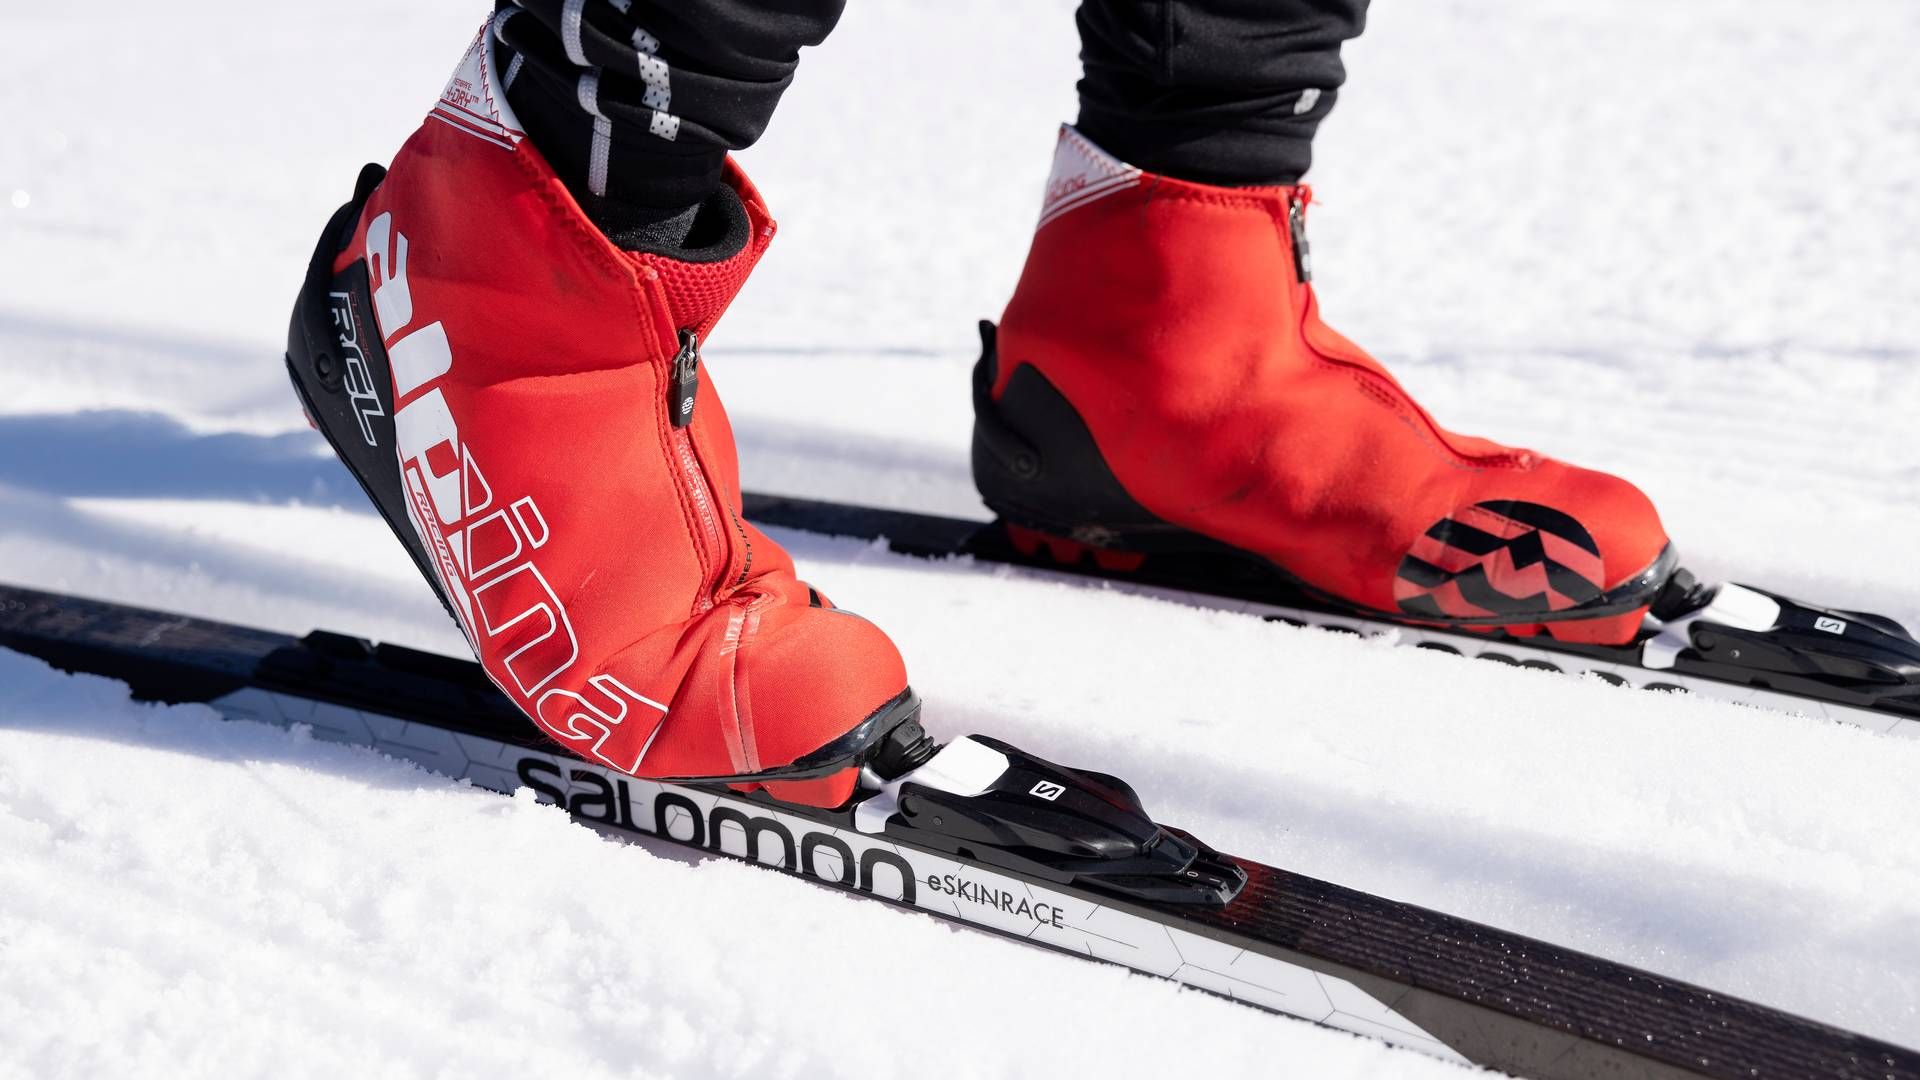 Snowminds Group arrangerer ski- og snowboarduddannelser. | Foto: Thomas Borberg